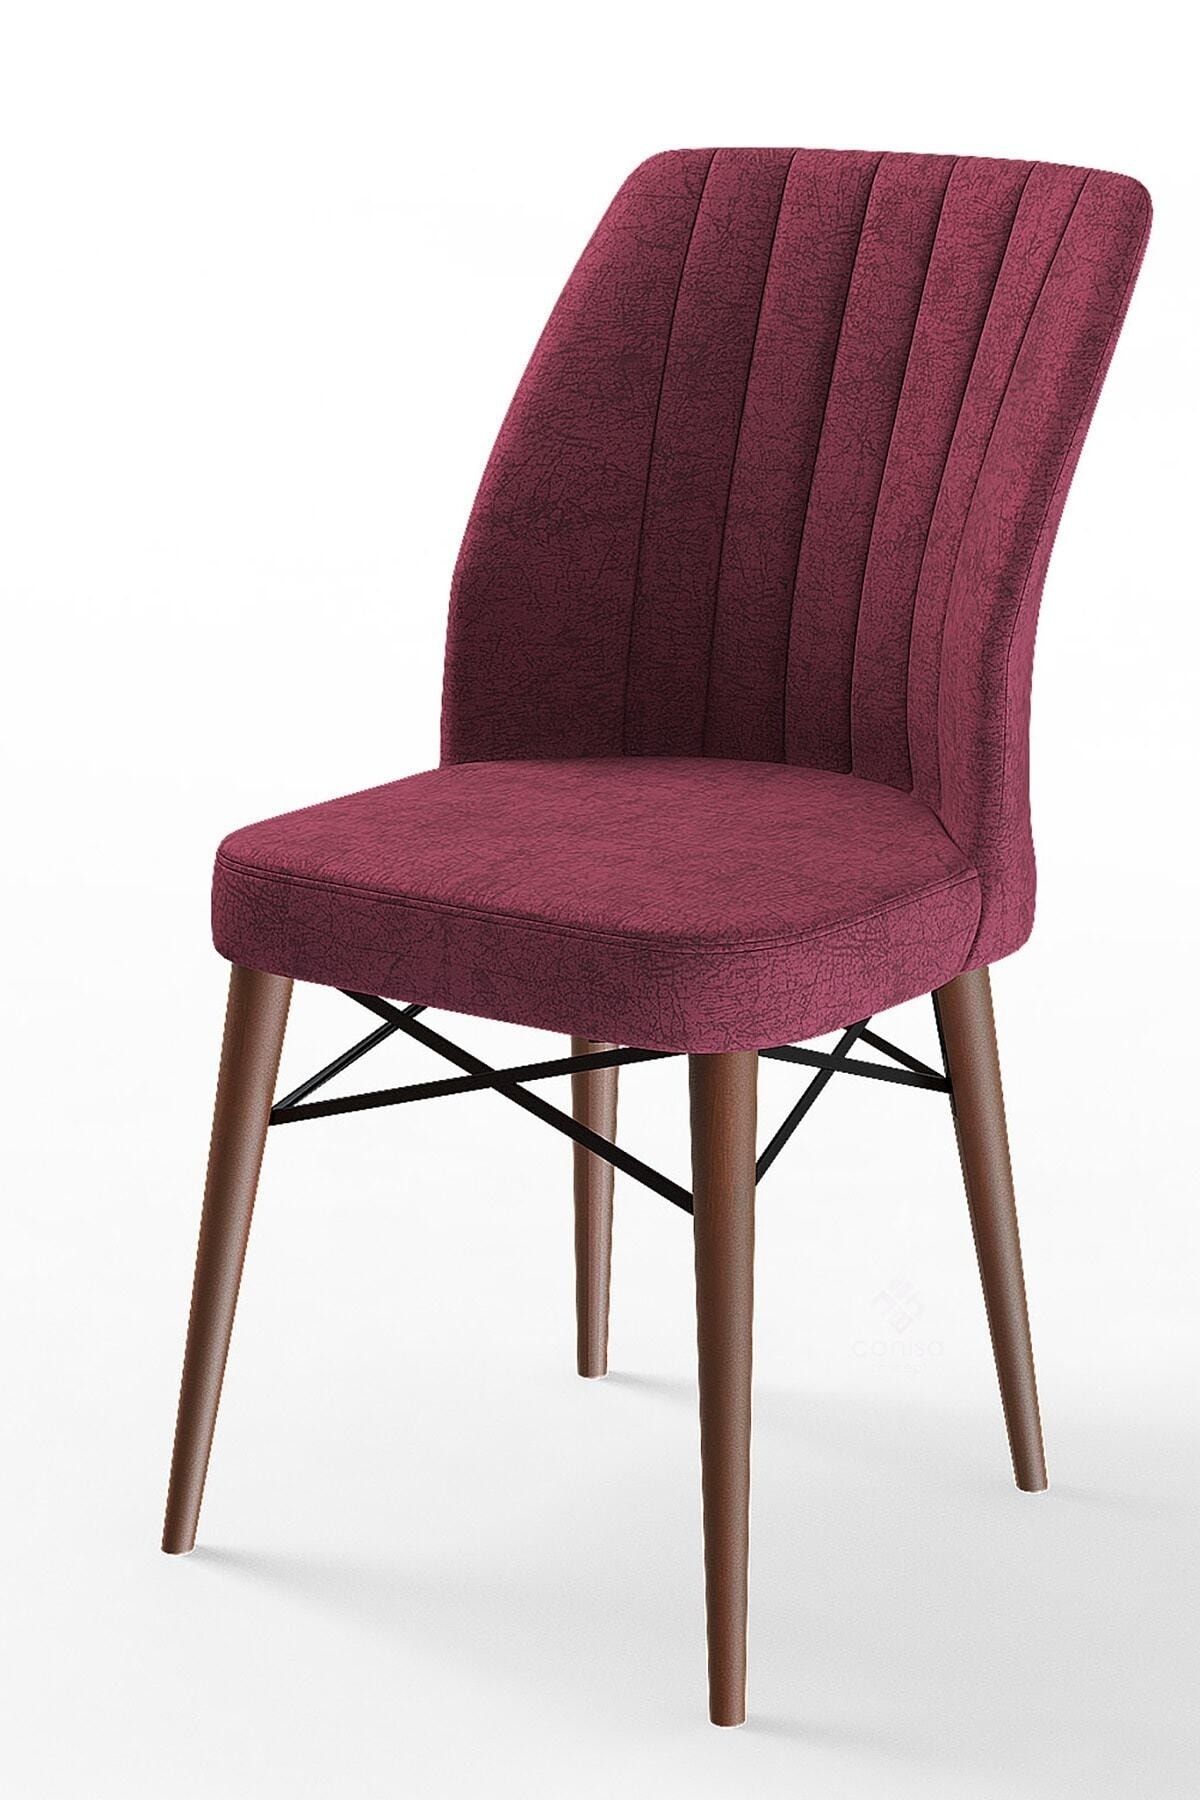 Canisa Concept Flex Serisi, Bordo Renk Sandalye, Ceviz Gürgen Ayak